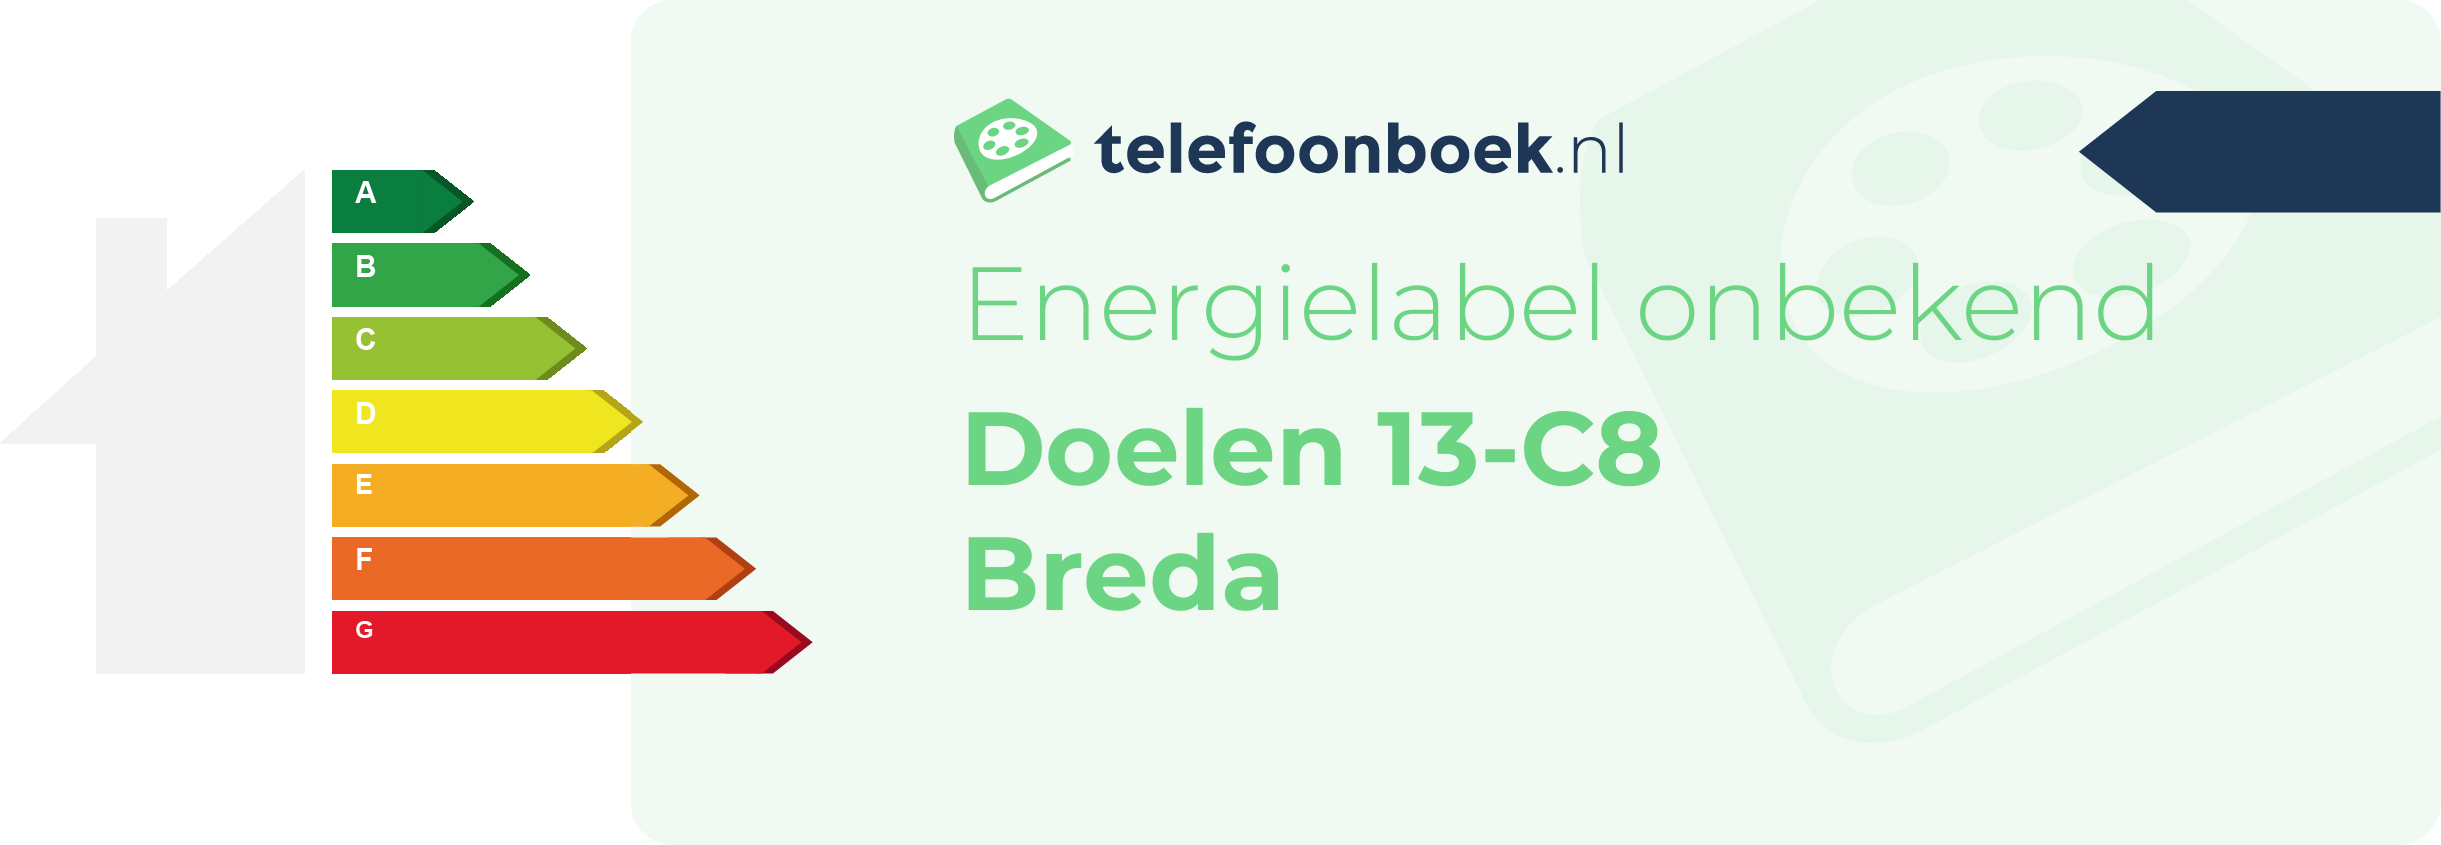 Energielabel Doelen 13-C8 Breda